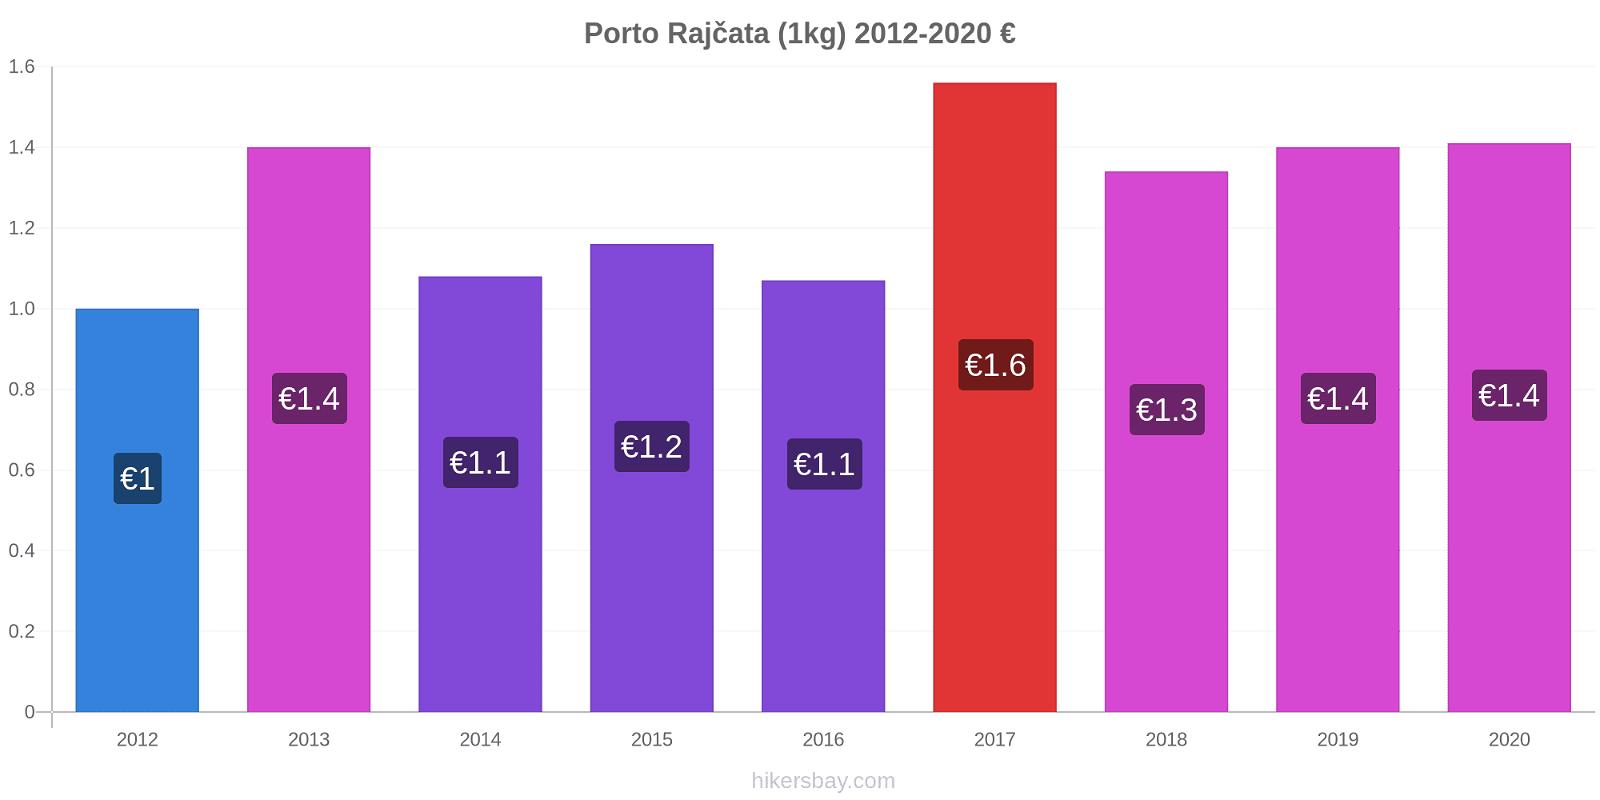 Porto změny cen Rajčata (1kg) hikersbay.com